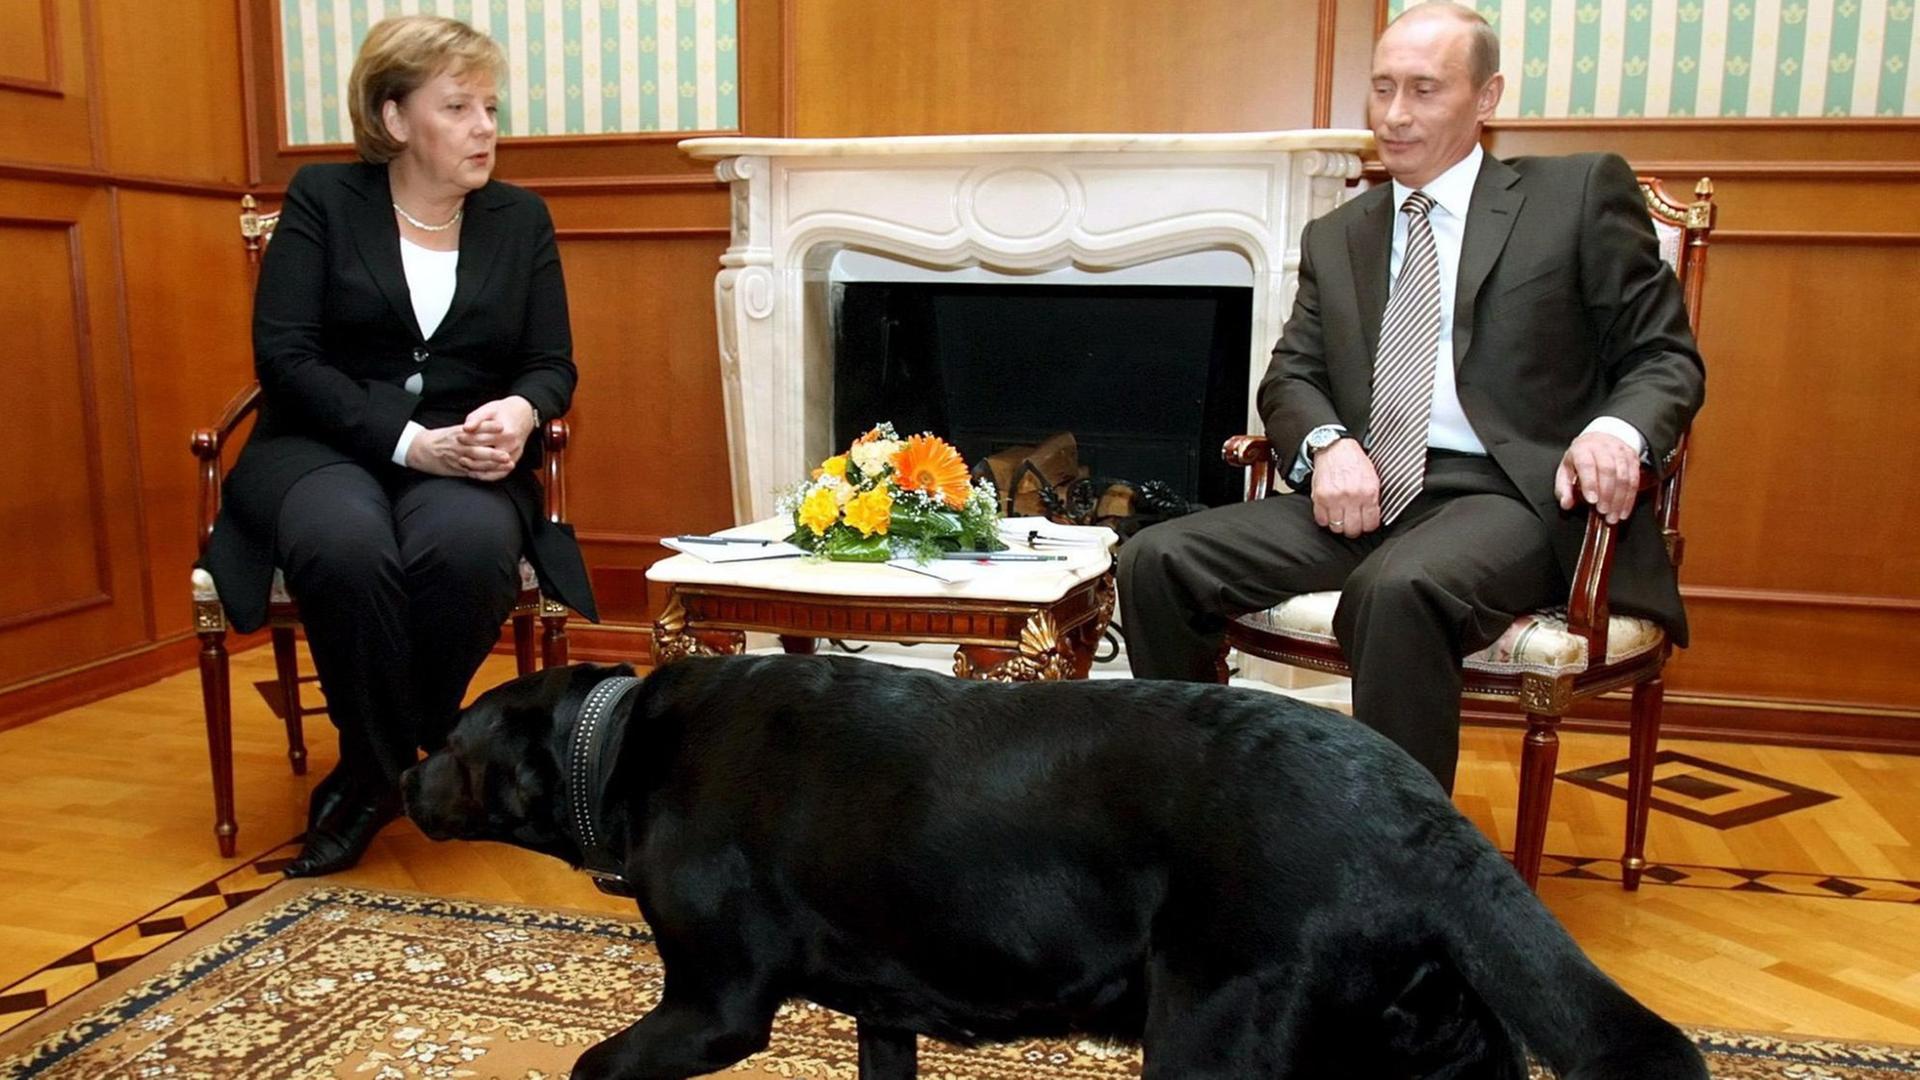 Angela Merkel 2007 im Gespräch mit Wladimir Putin in Sotschi. Putins großer schwarzer Hund durchquert den Raum.